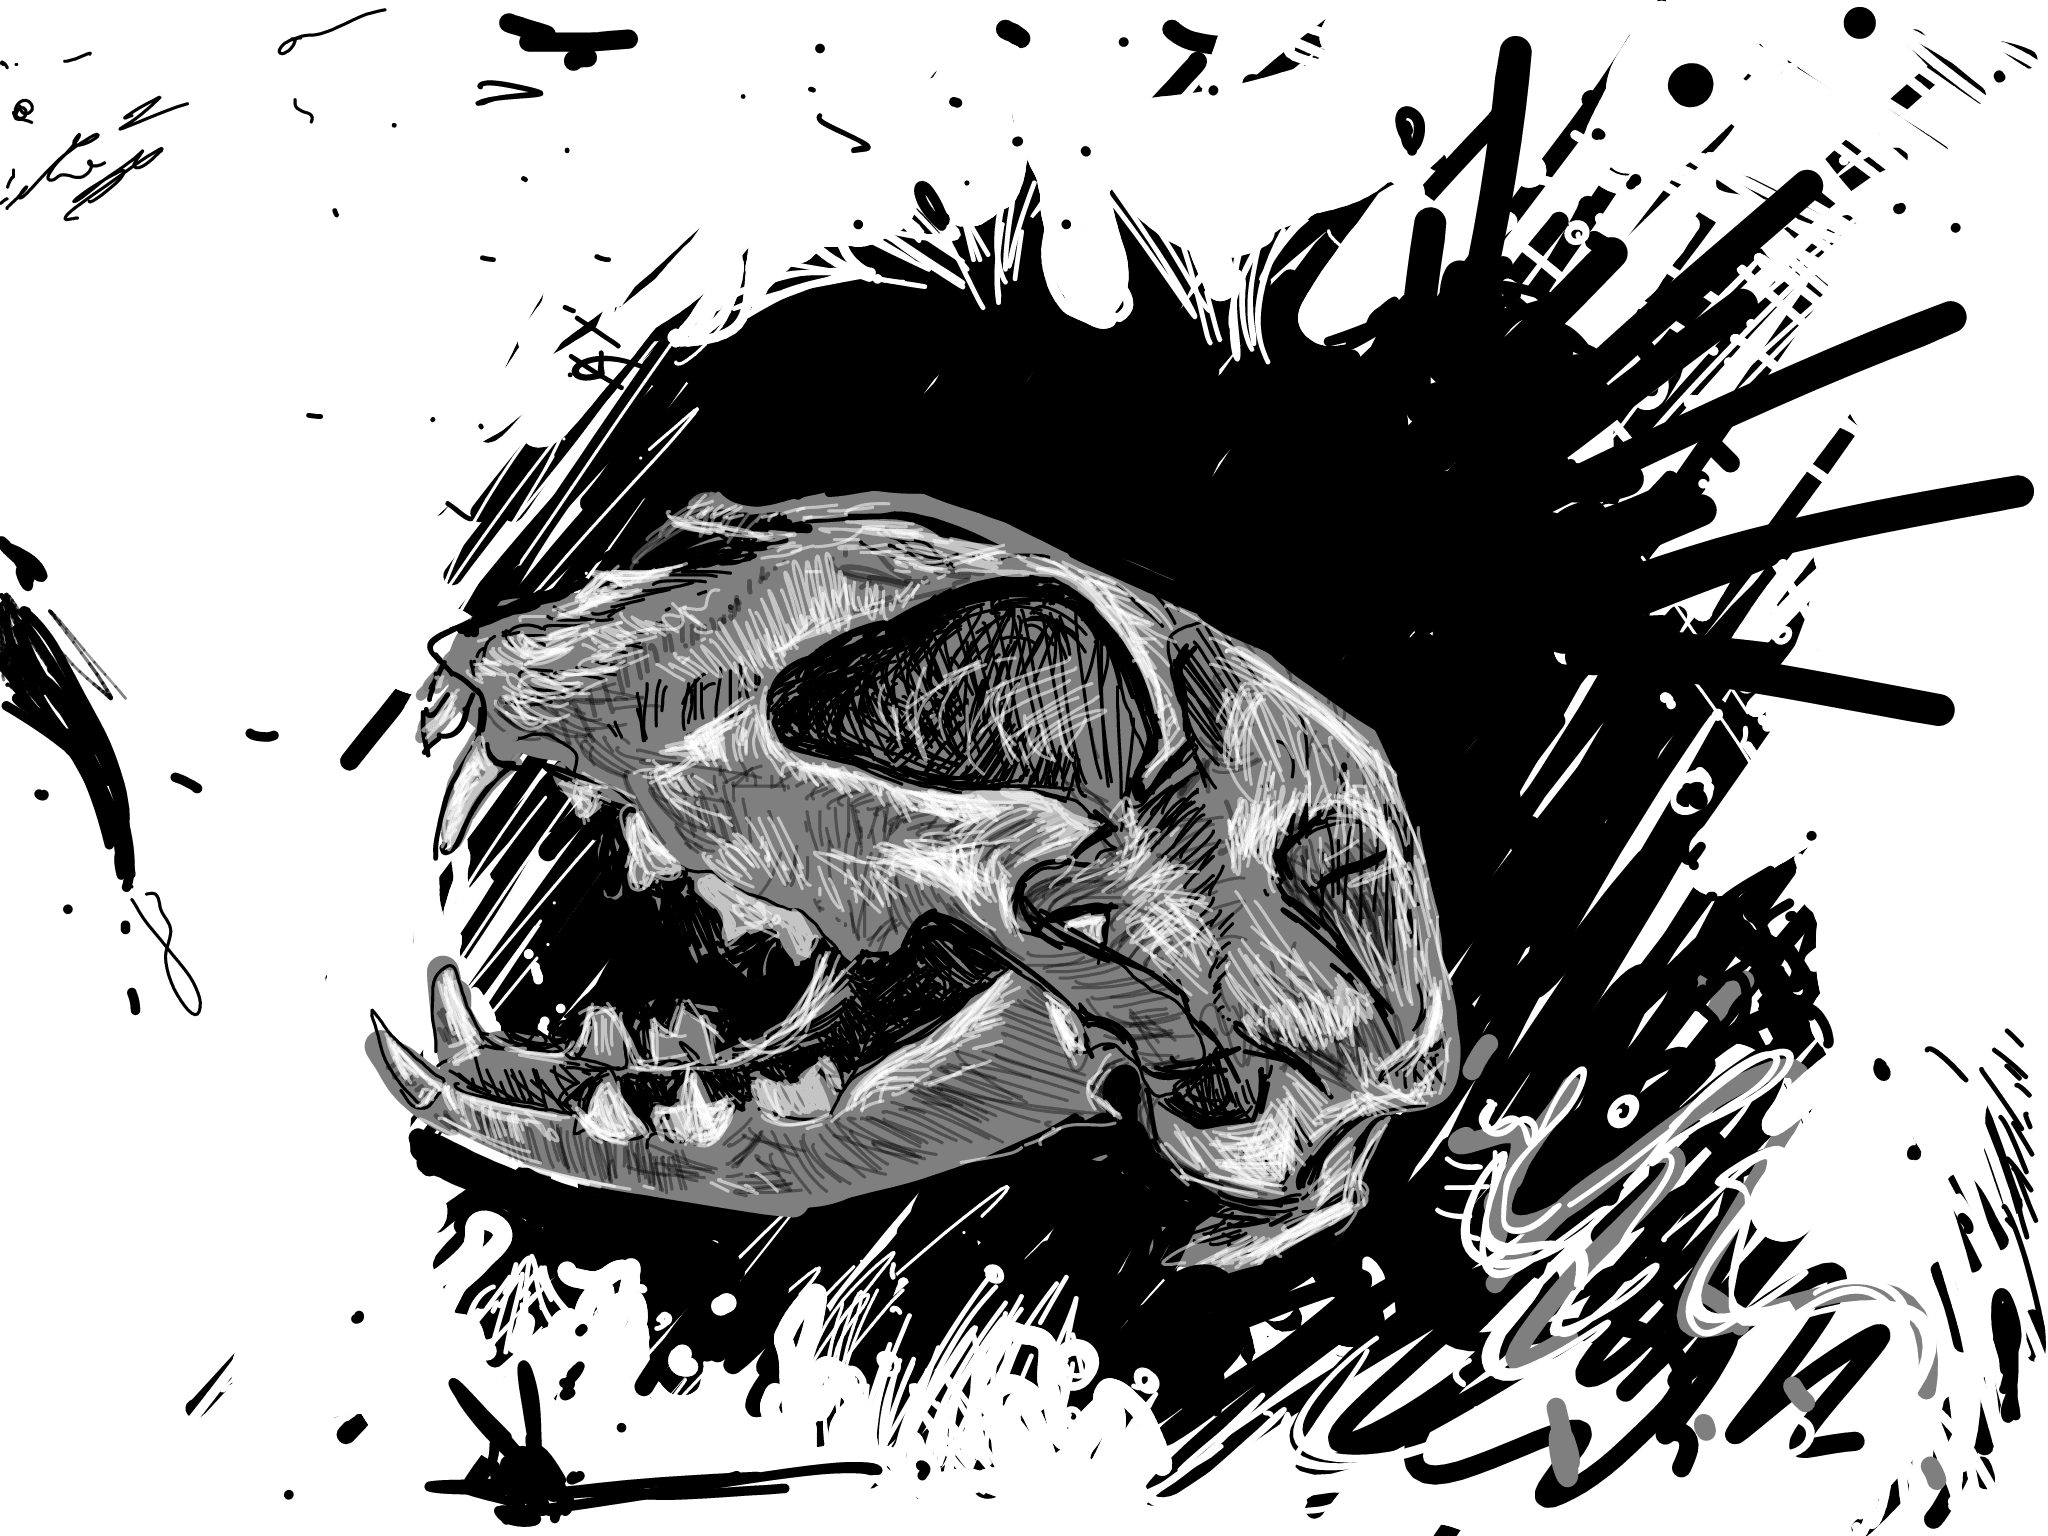 The Wild Skull